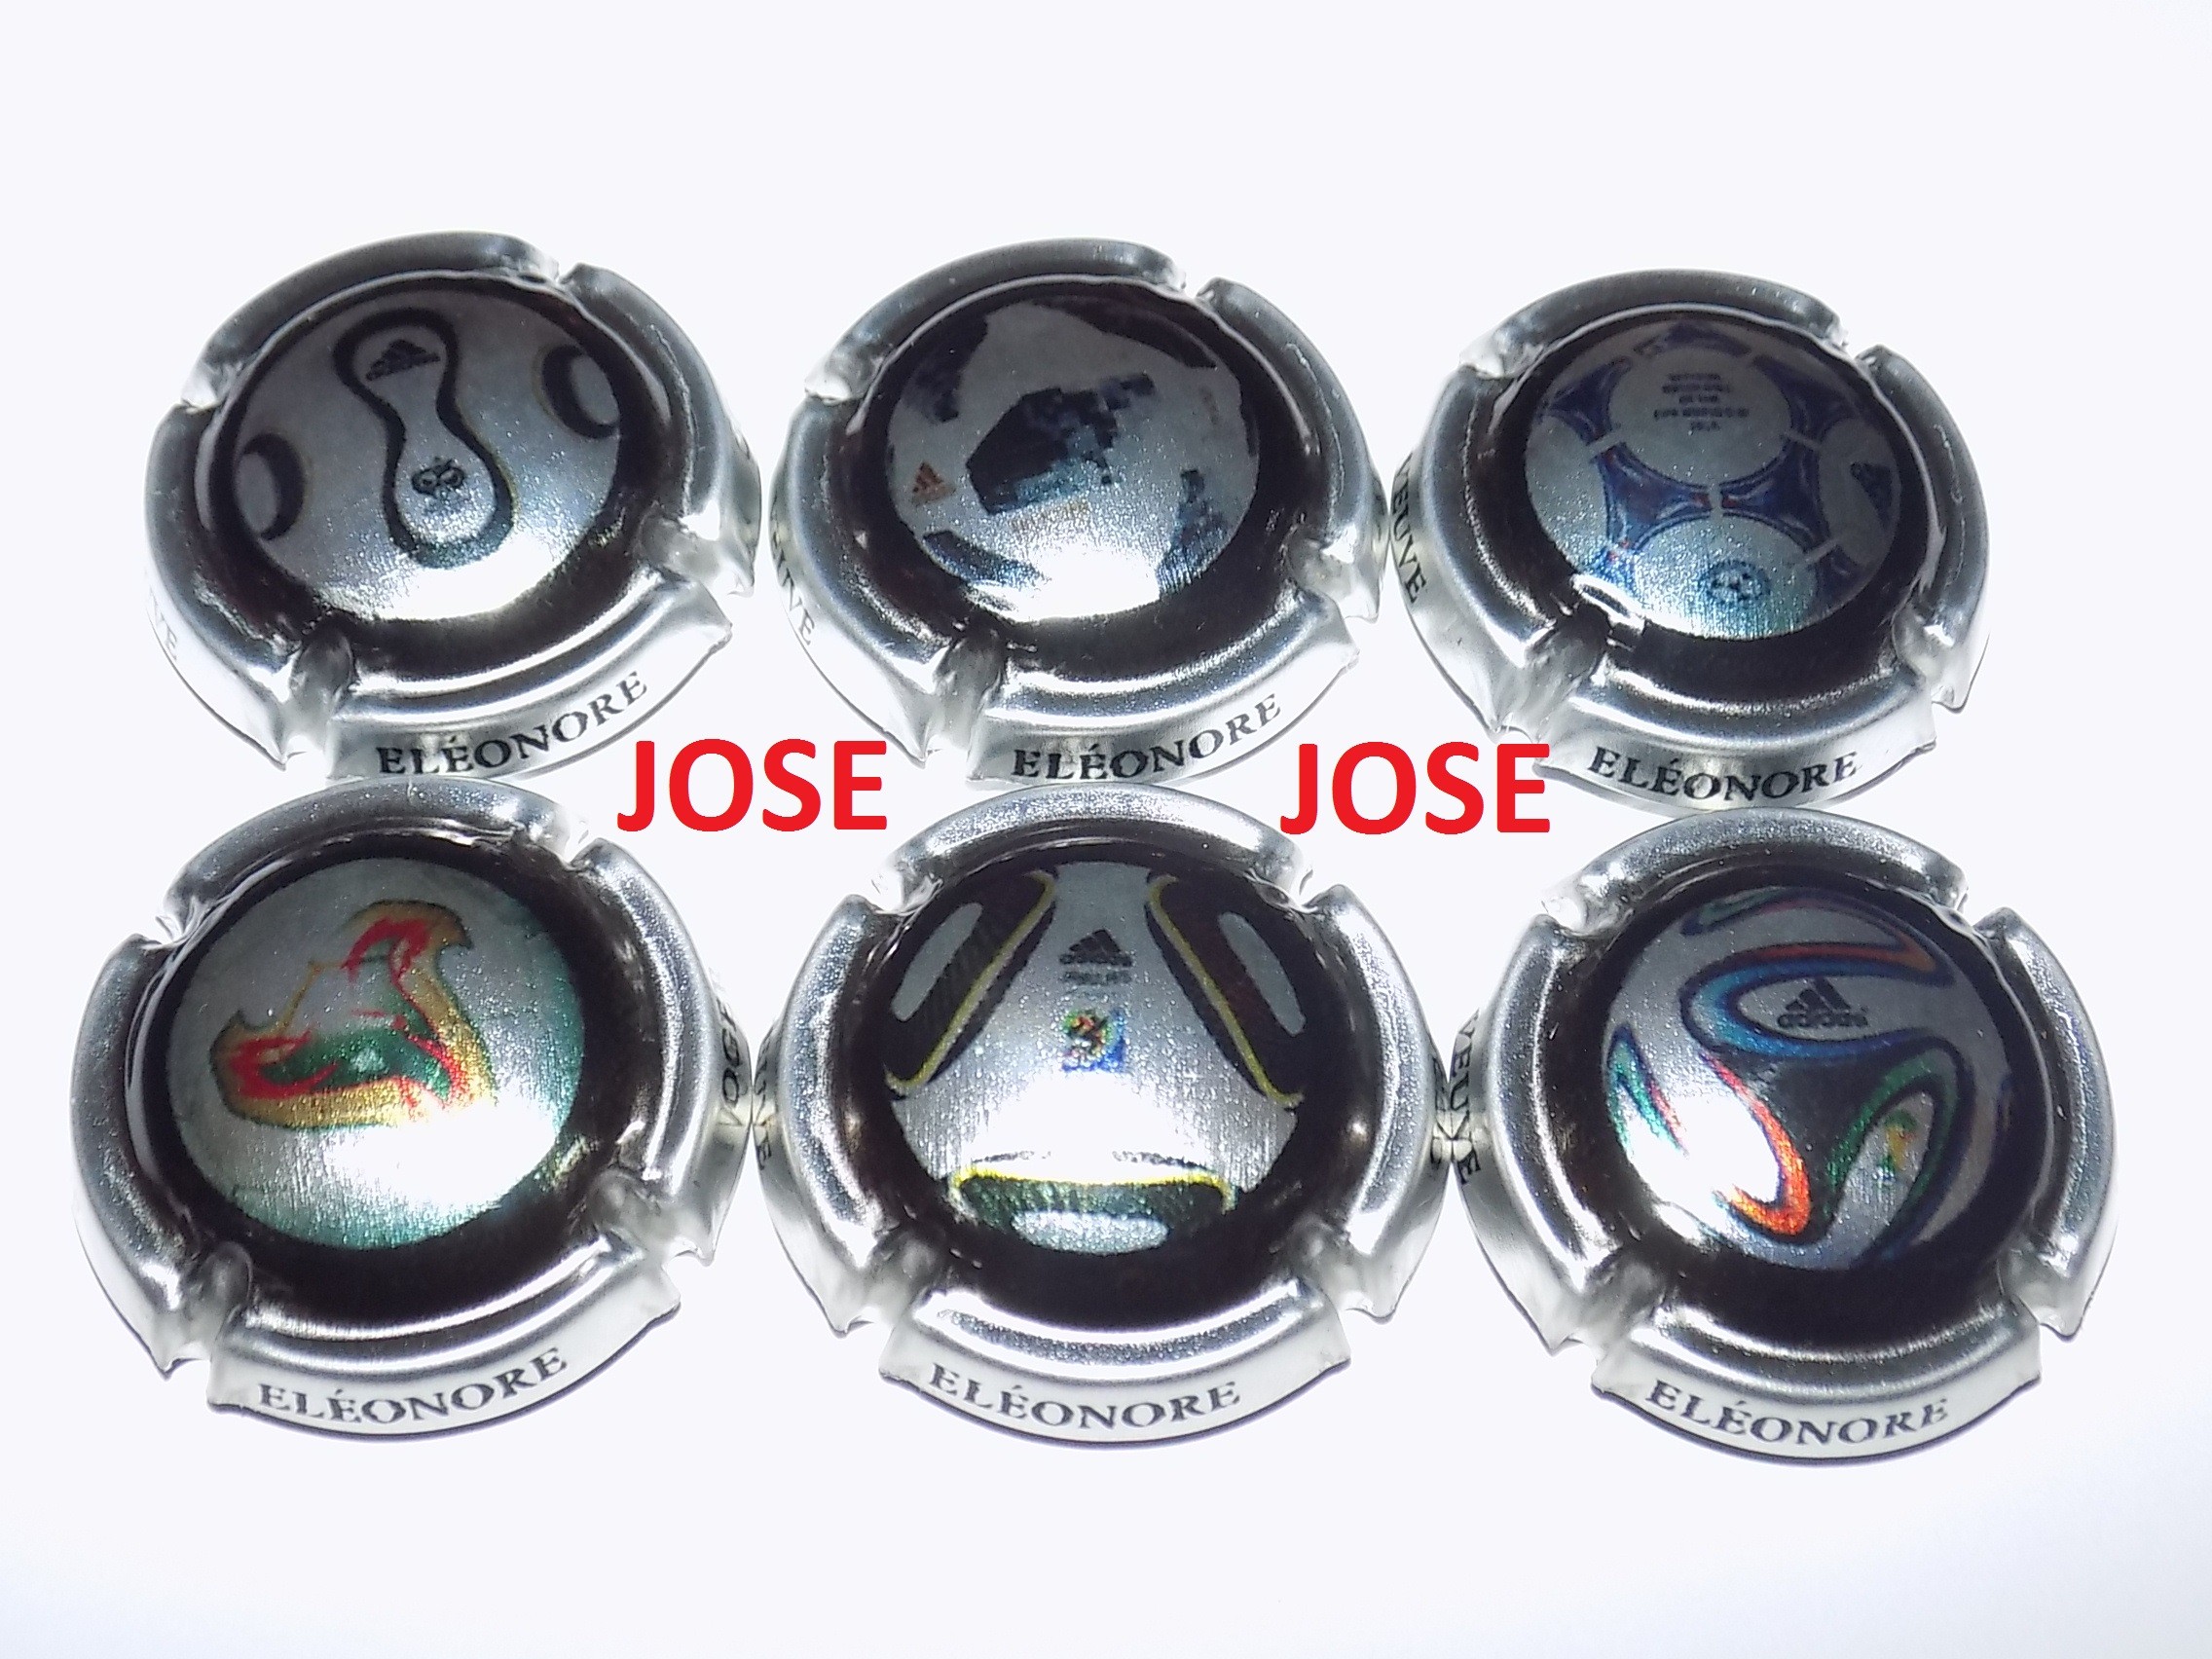 Série de 6 New capsules de champagne Veuve ELEONORE ballons de football 